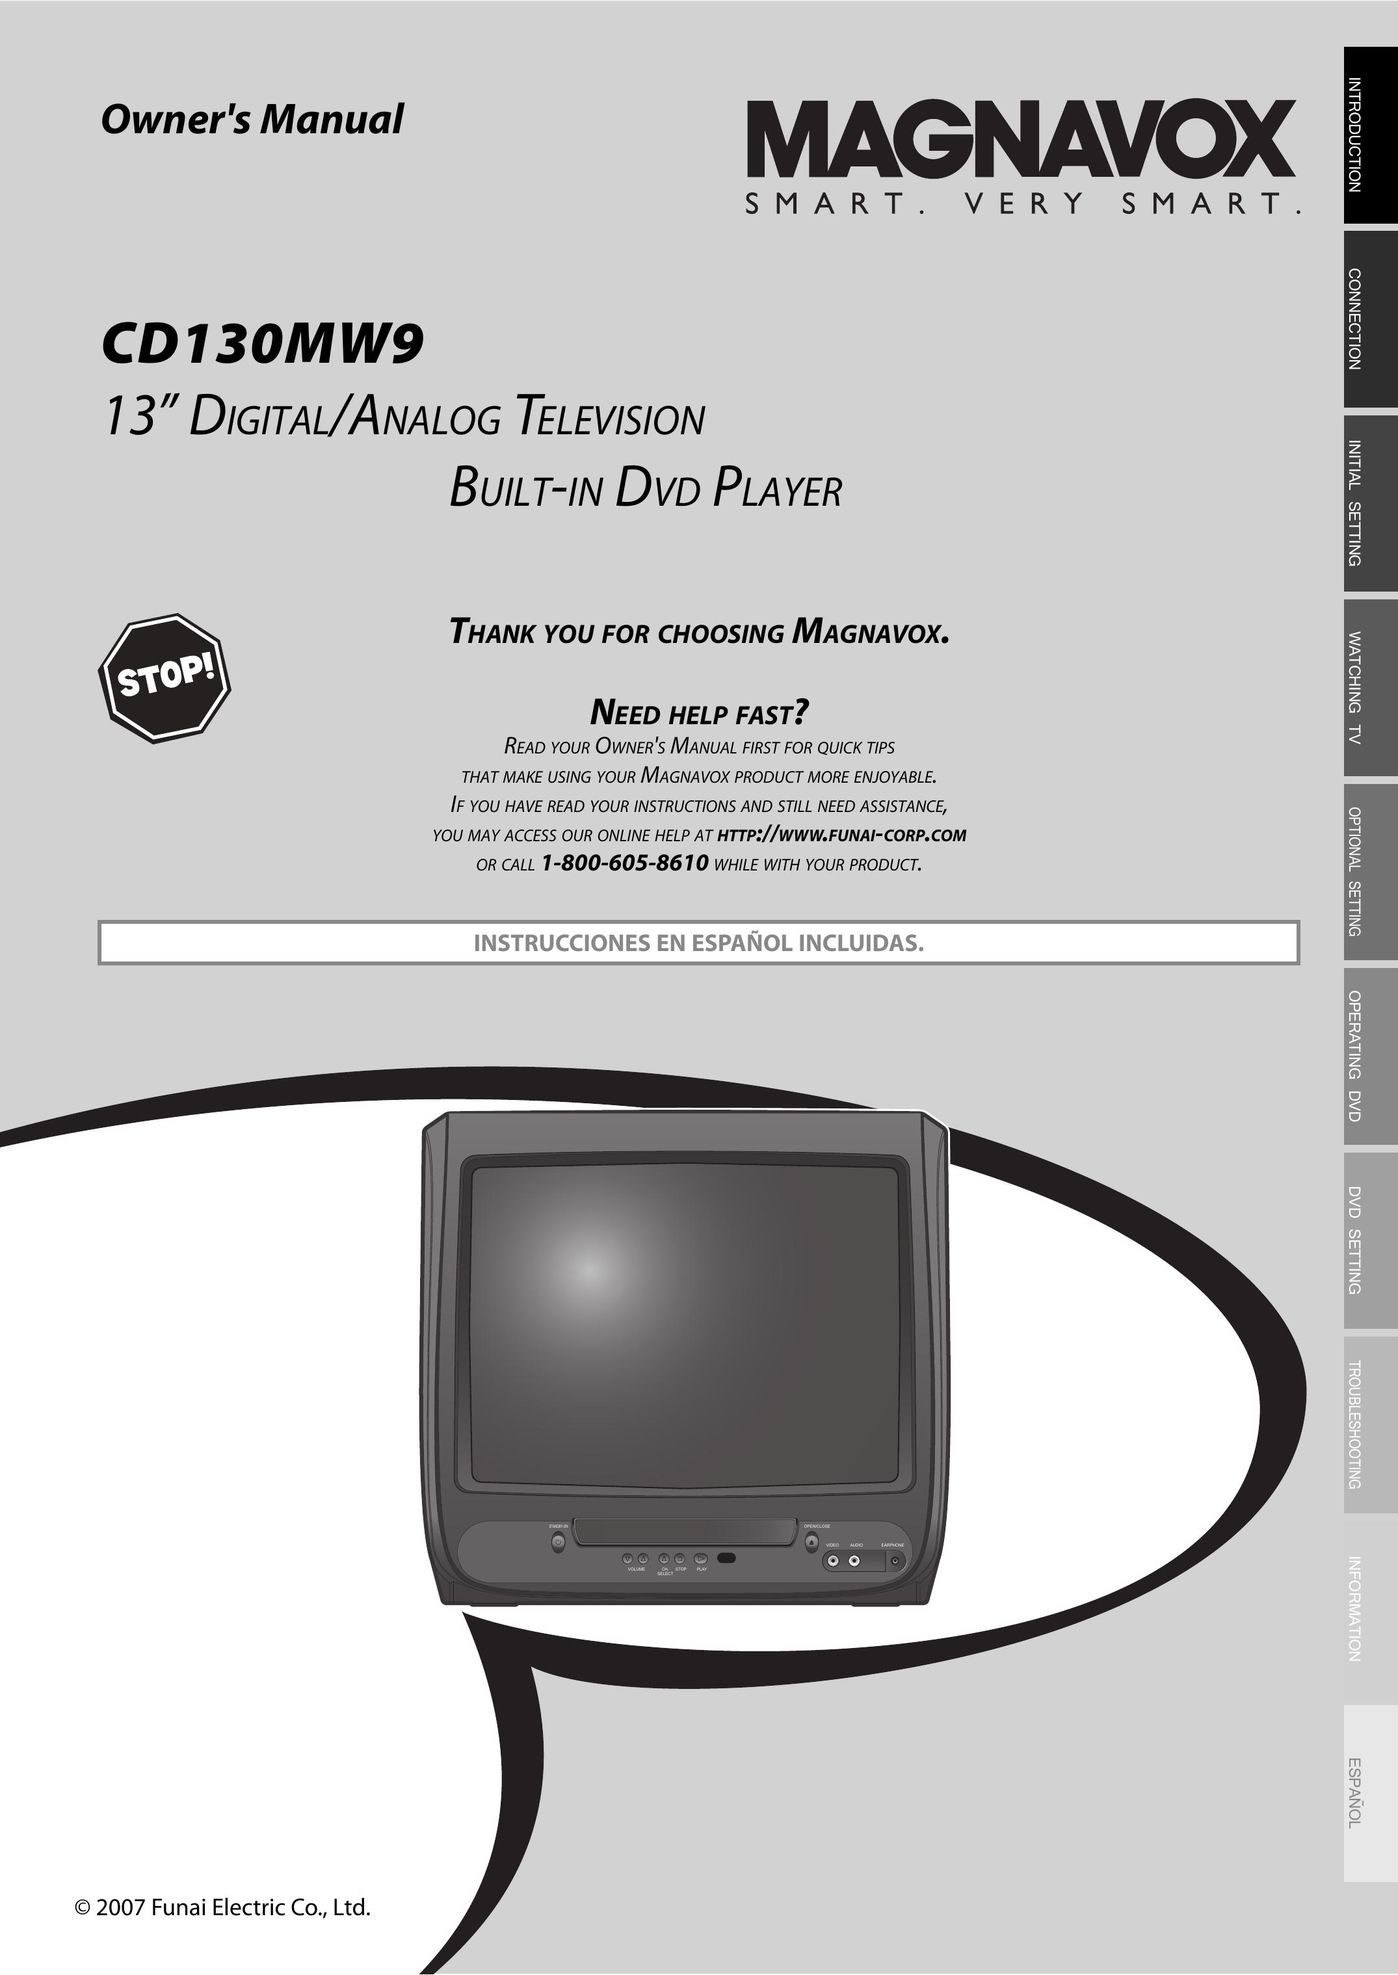 Magnavox CD130MW9 TV Receiver User Manual